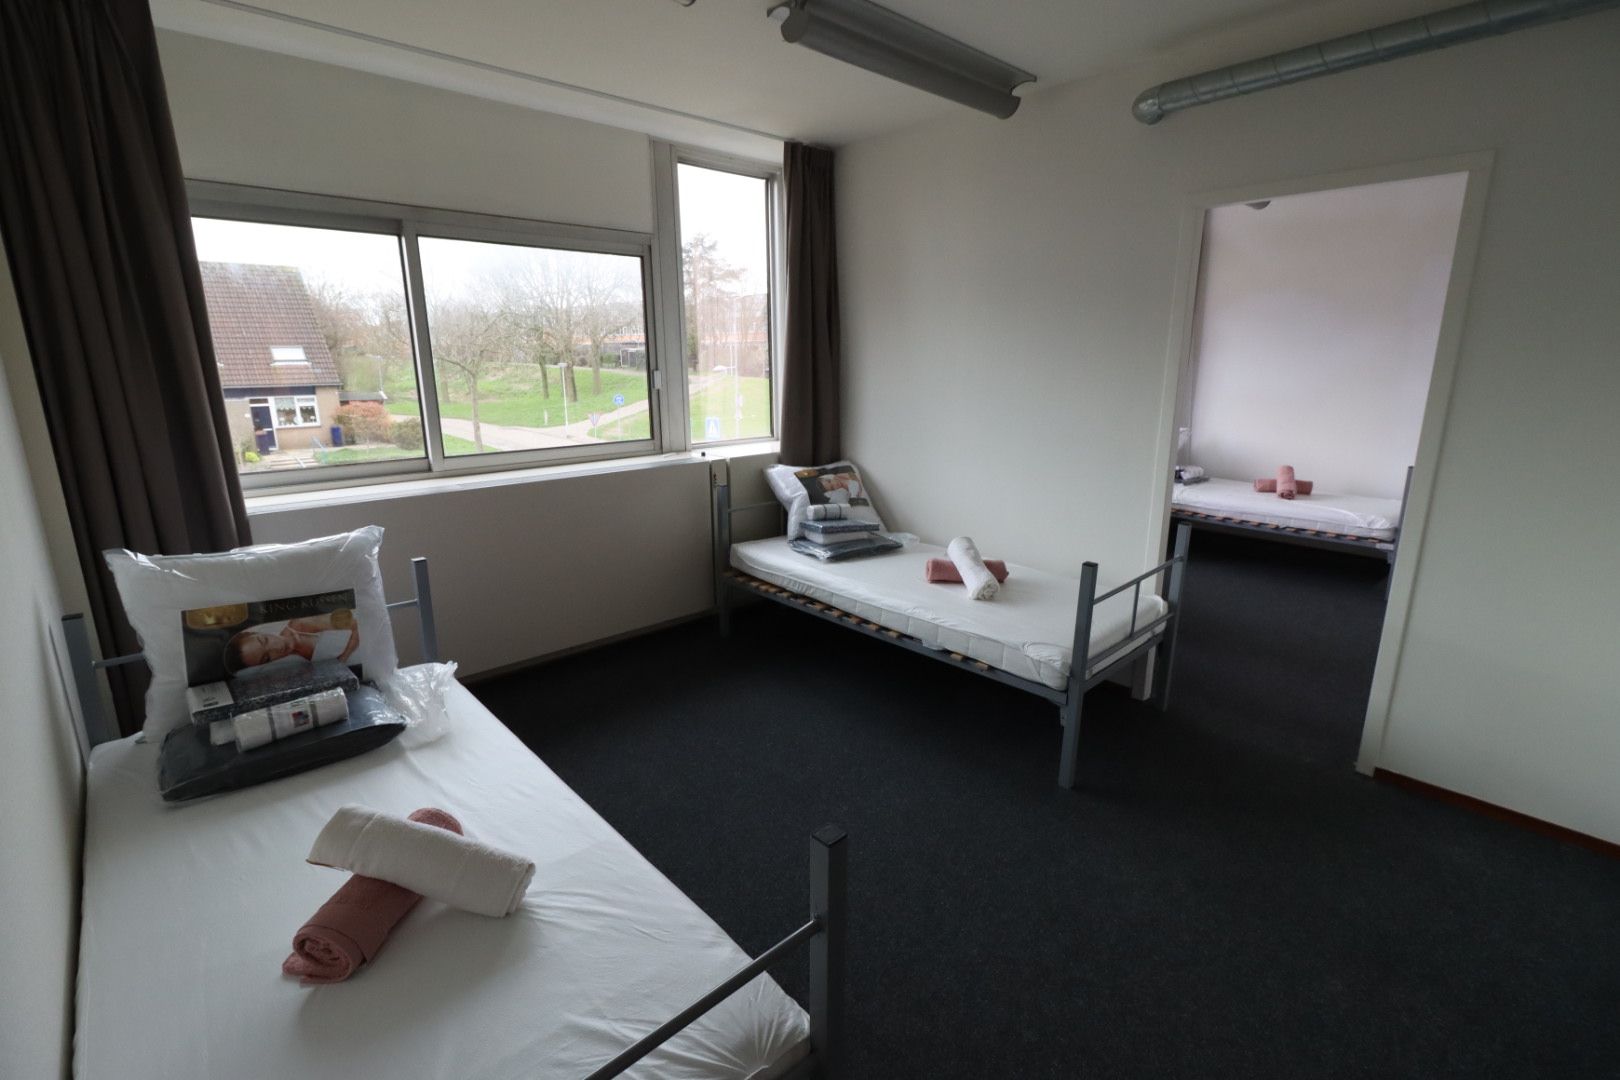 Pand Langs de Baan in Hoogvliet heeft 133 kamers en plaats voor 277 vluchtelingen